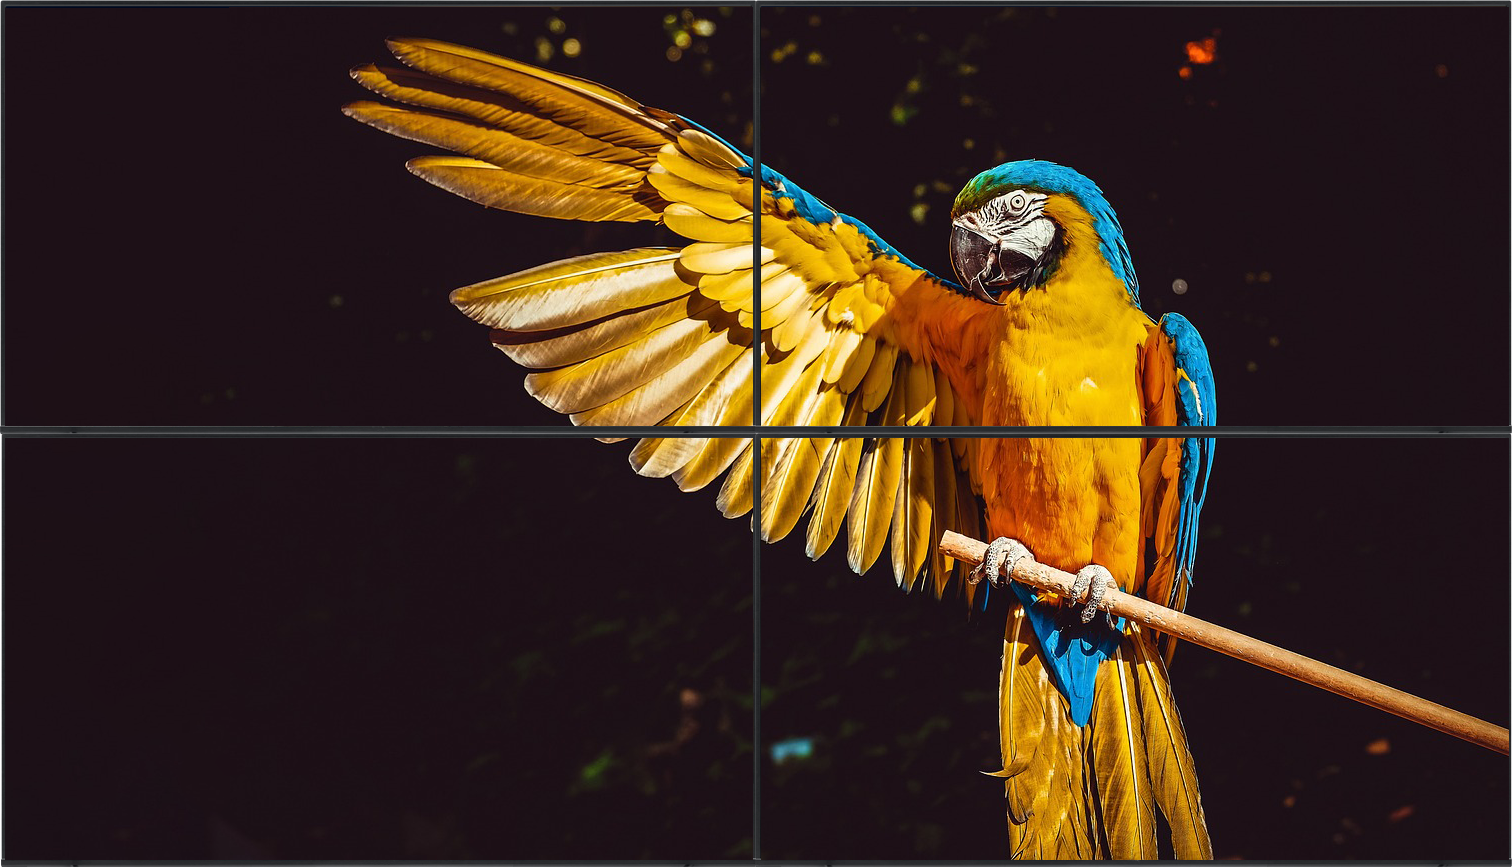 BrightSign Videowand, die ein qualitativ hochwertiges Bild eines Papageis zeigt